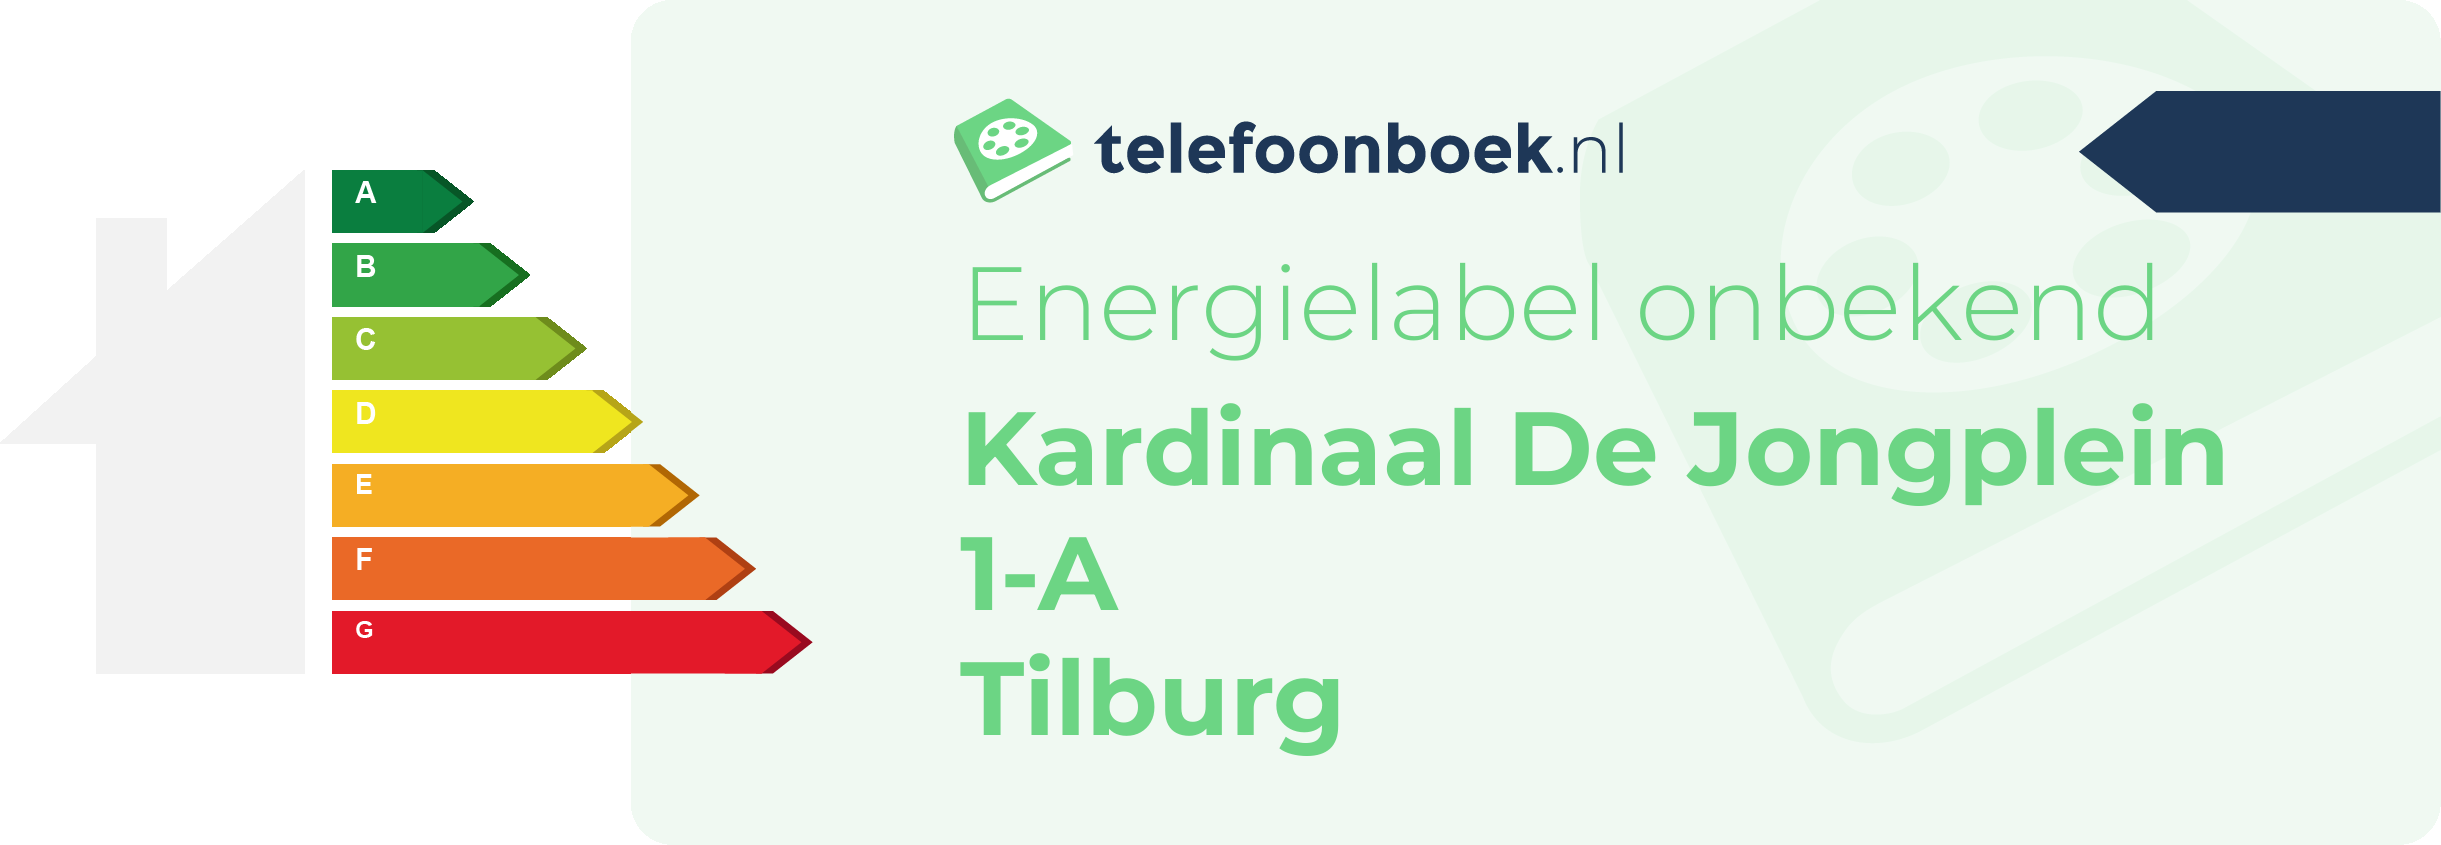 Energielabel Kardinaal De Jongplein 1-A Tilburg